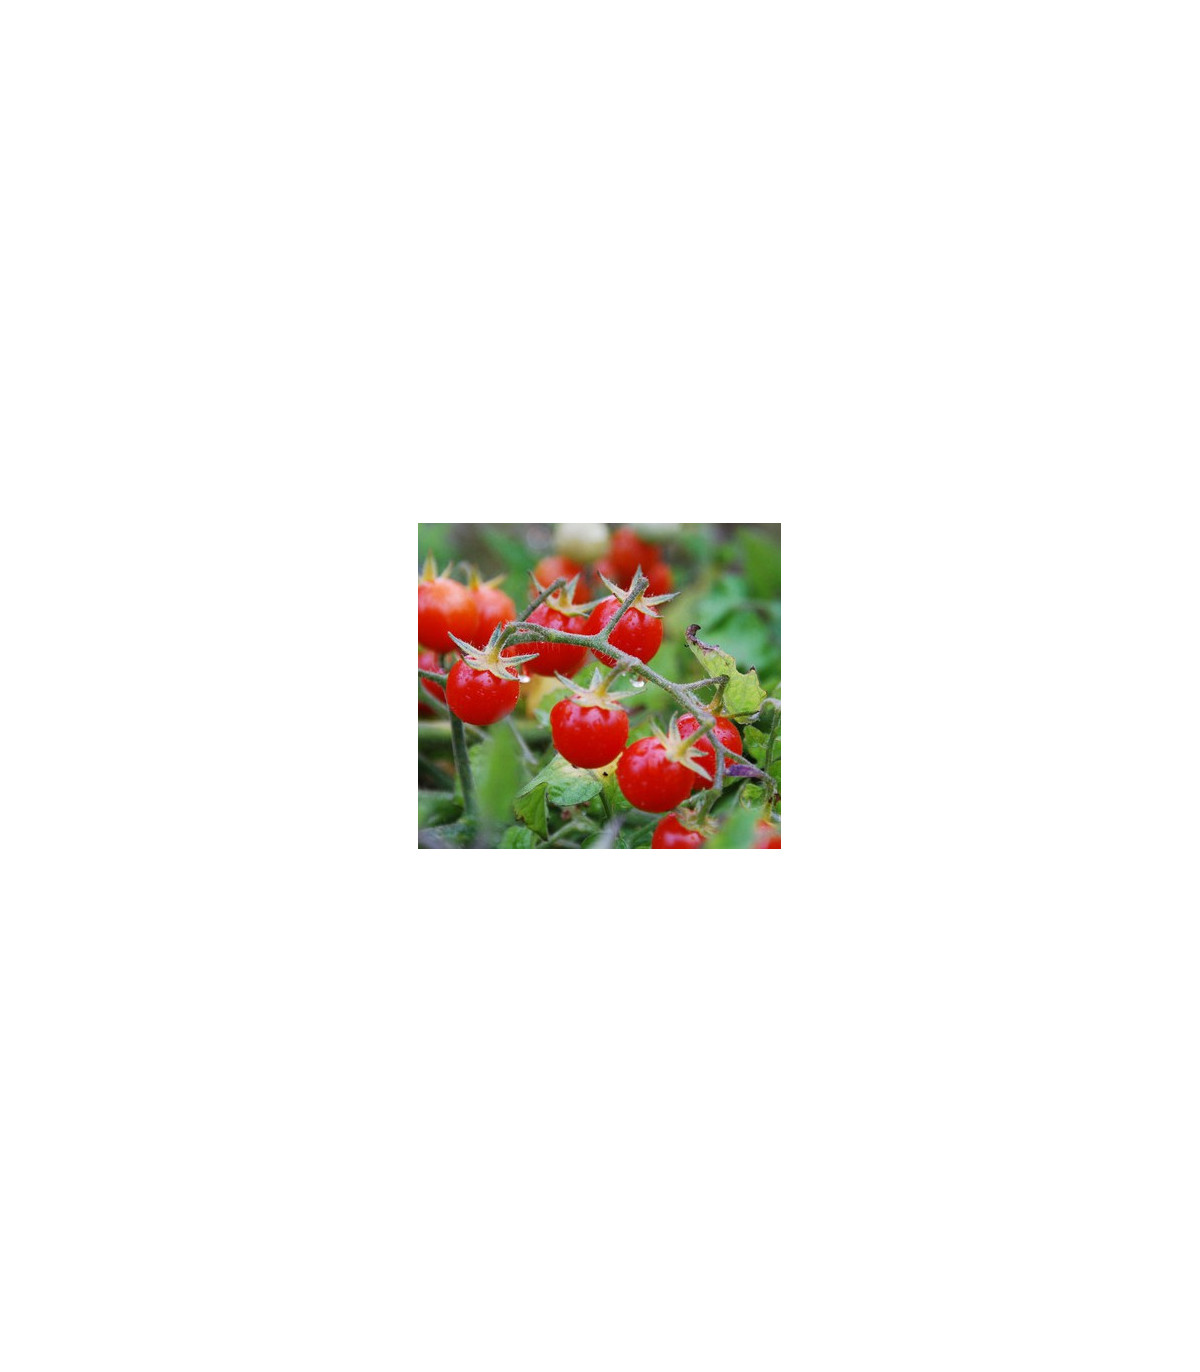 Divá paradajka červená - Lycopersicon pimpinellifolium - predaj semien divých paradajok - 6 ks